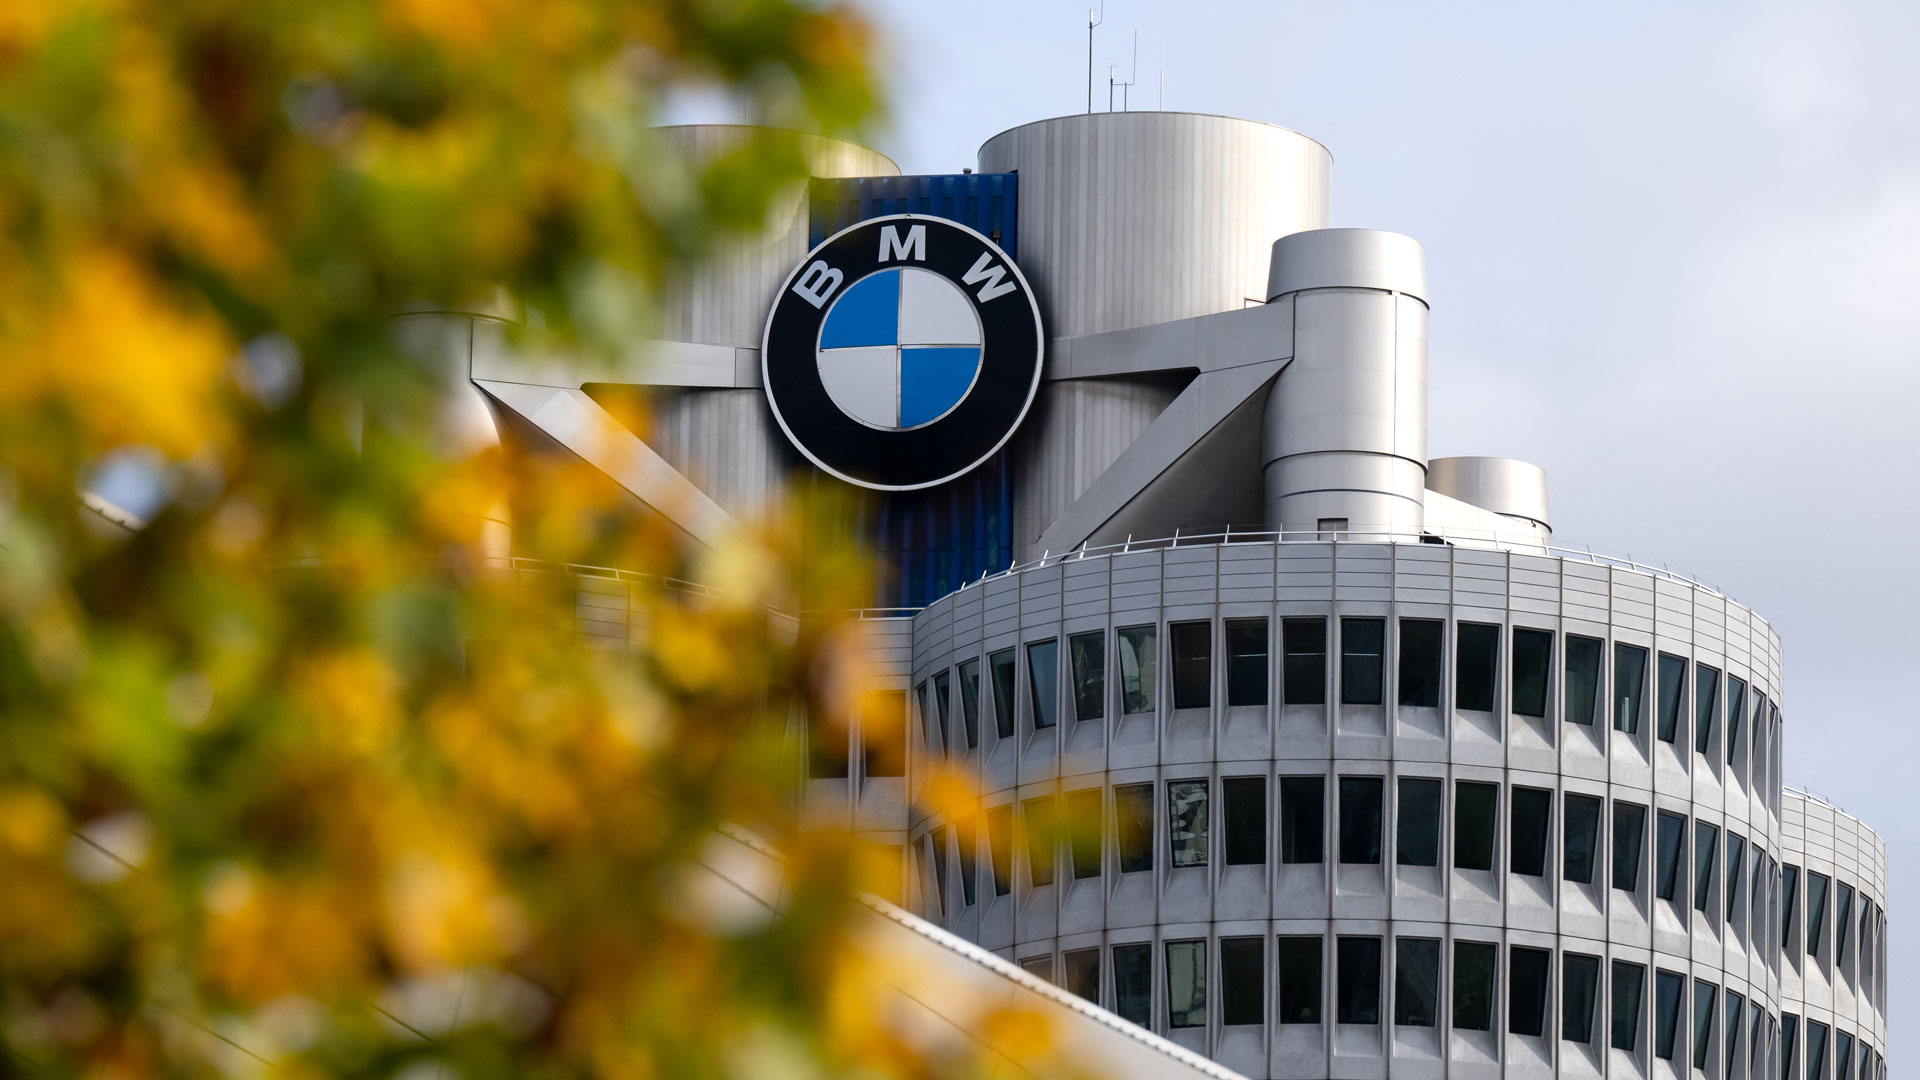 BMW Unternehmenszentrale | picture alliance/dpa